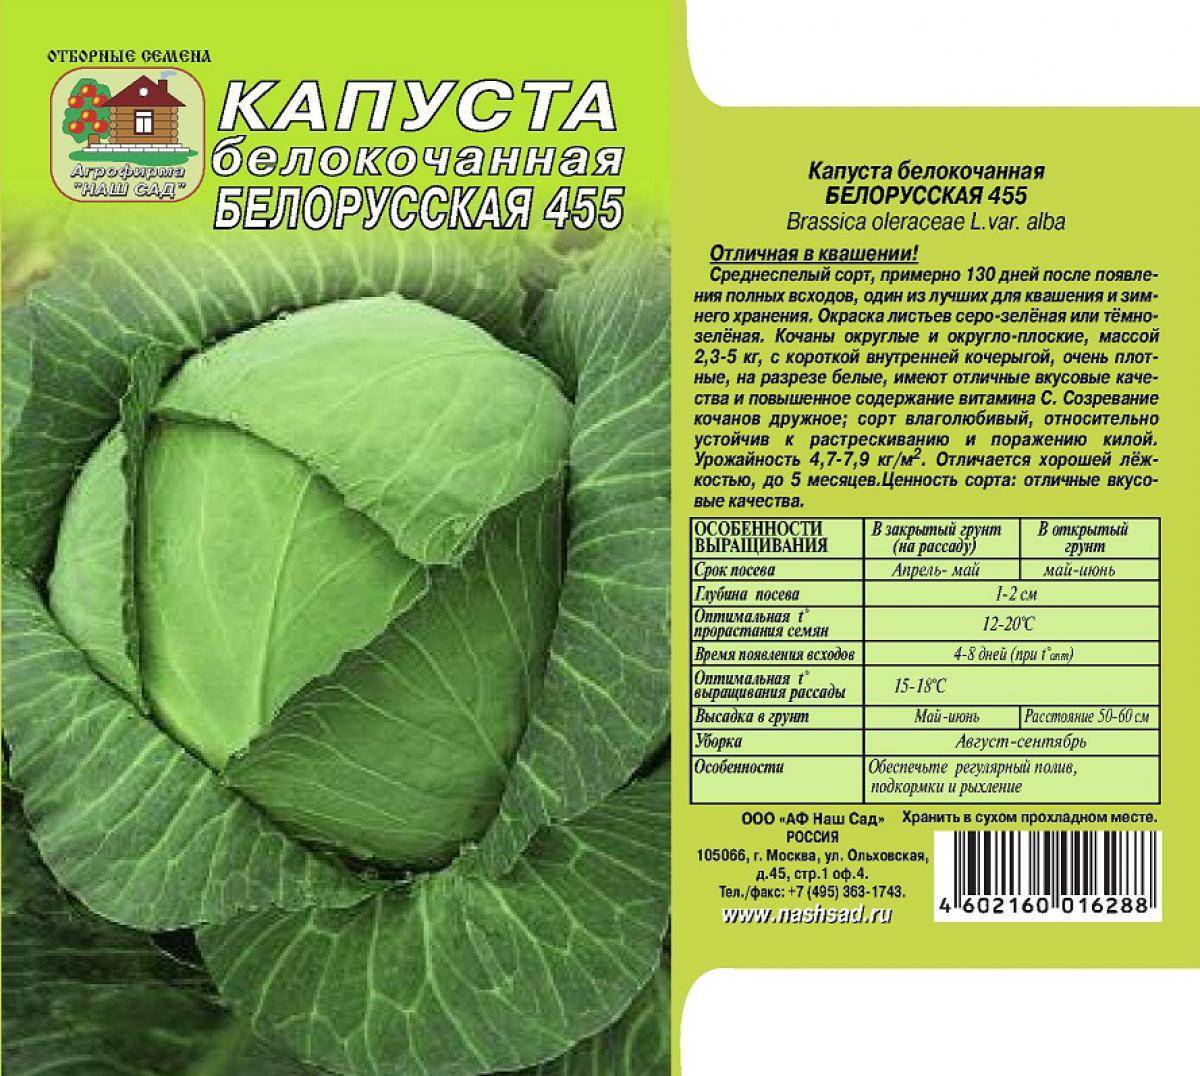 Капуста белорусская: описание сорта, фото, характеристика, отзывы, урожайность, особенности выращивания